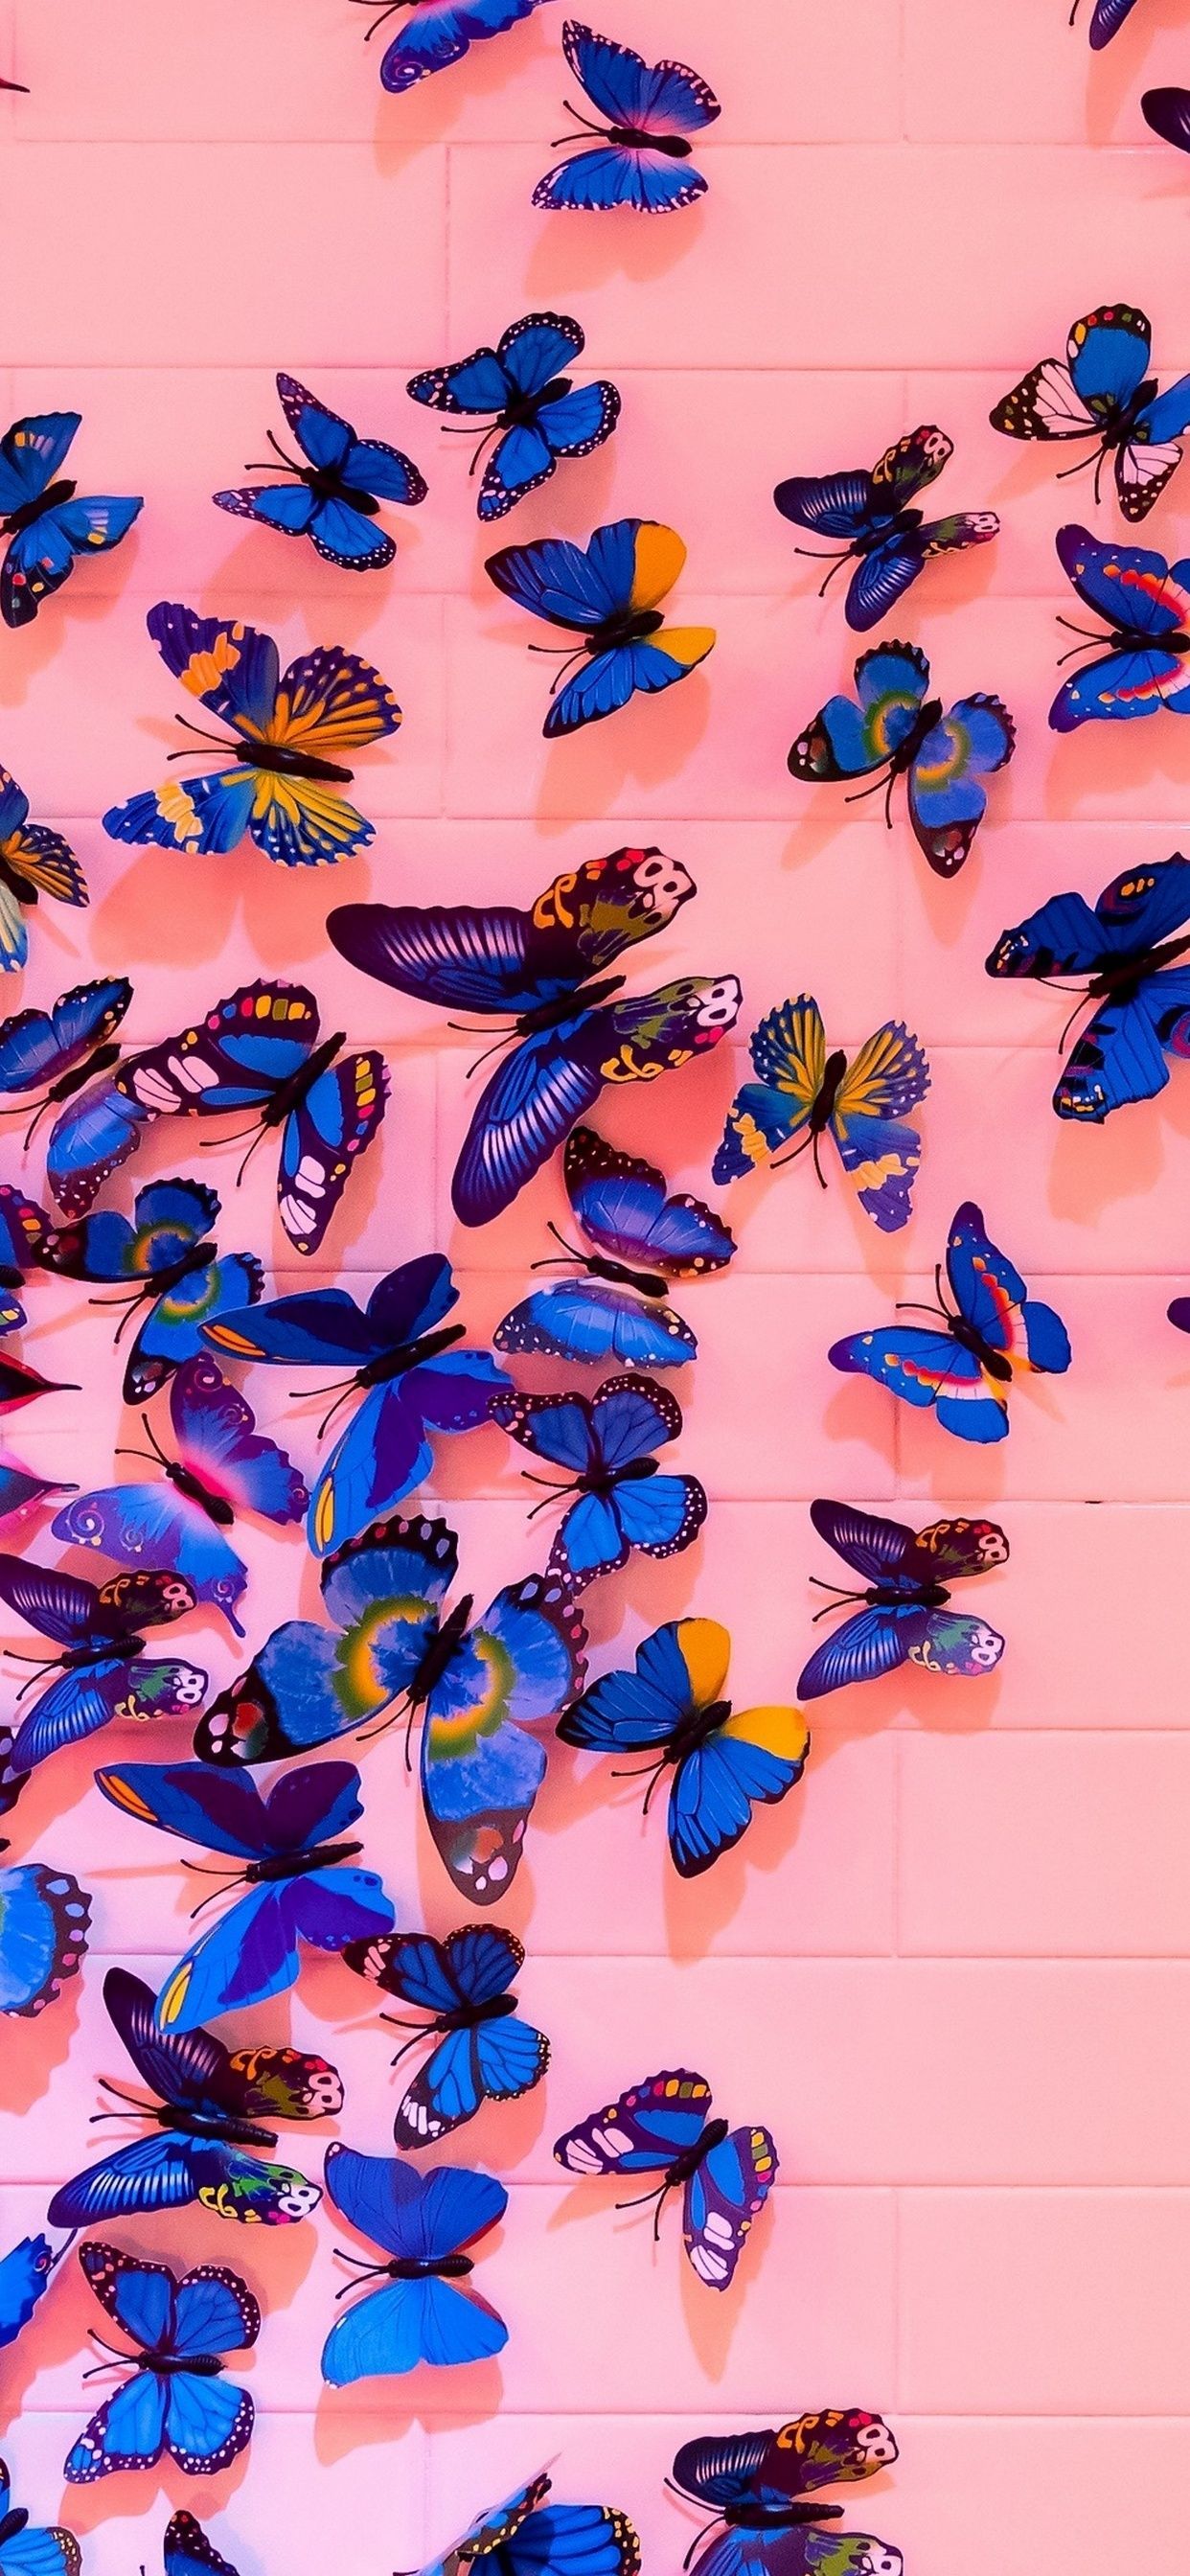 Aesthetic Butterfly Wallpaper 2020